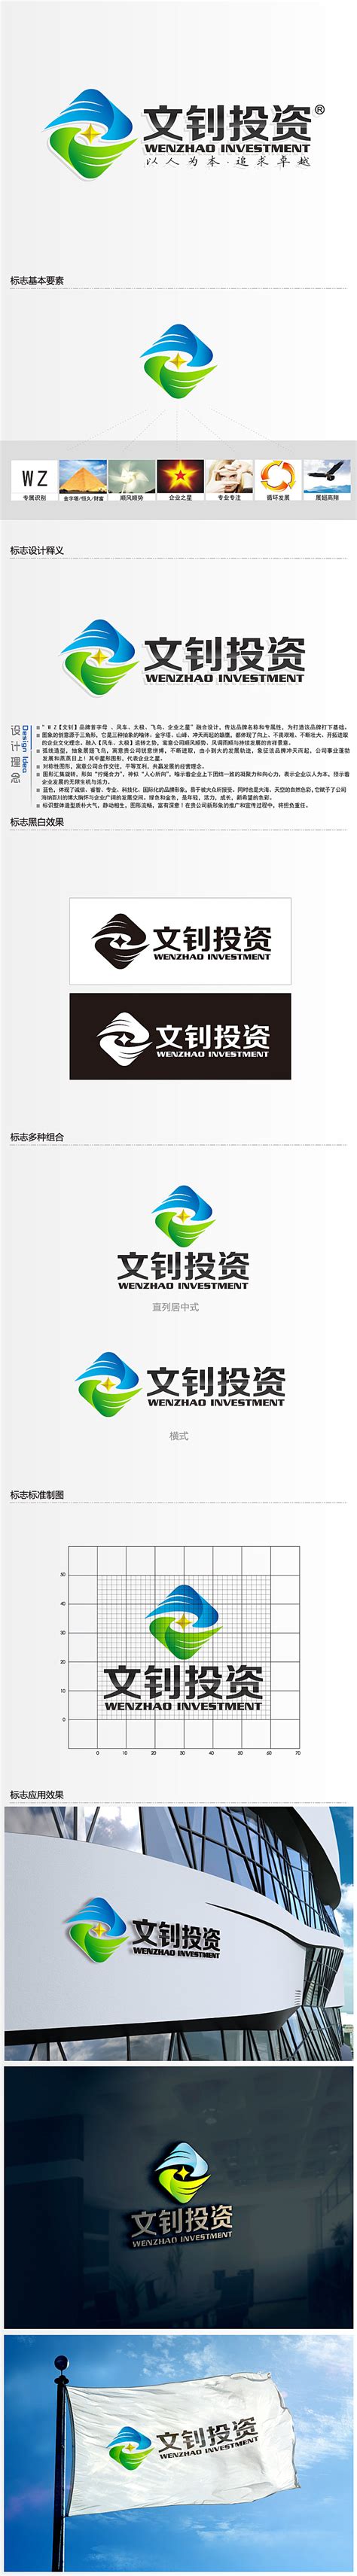 湛江市文钊投资有限公司logo设计 - 123标志设计网™